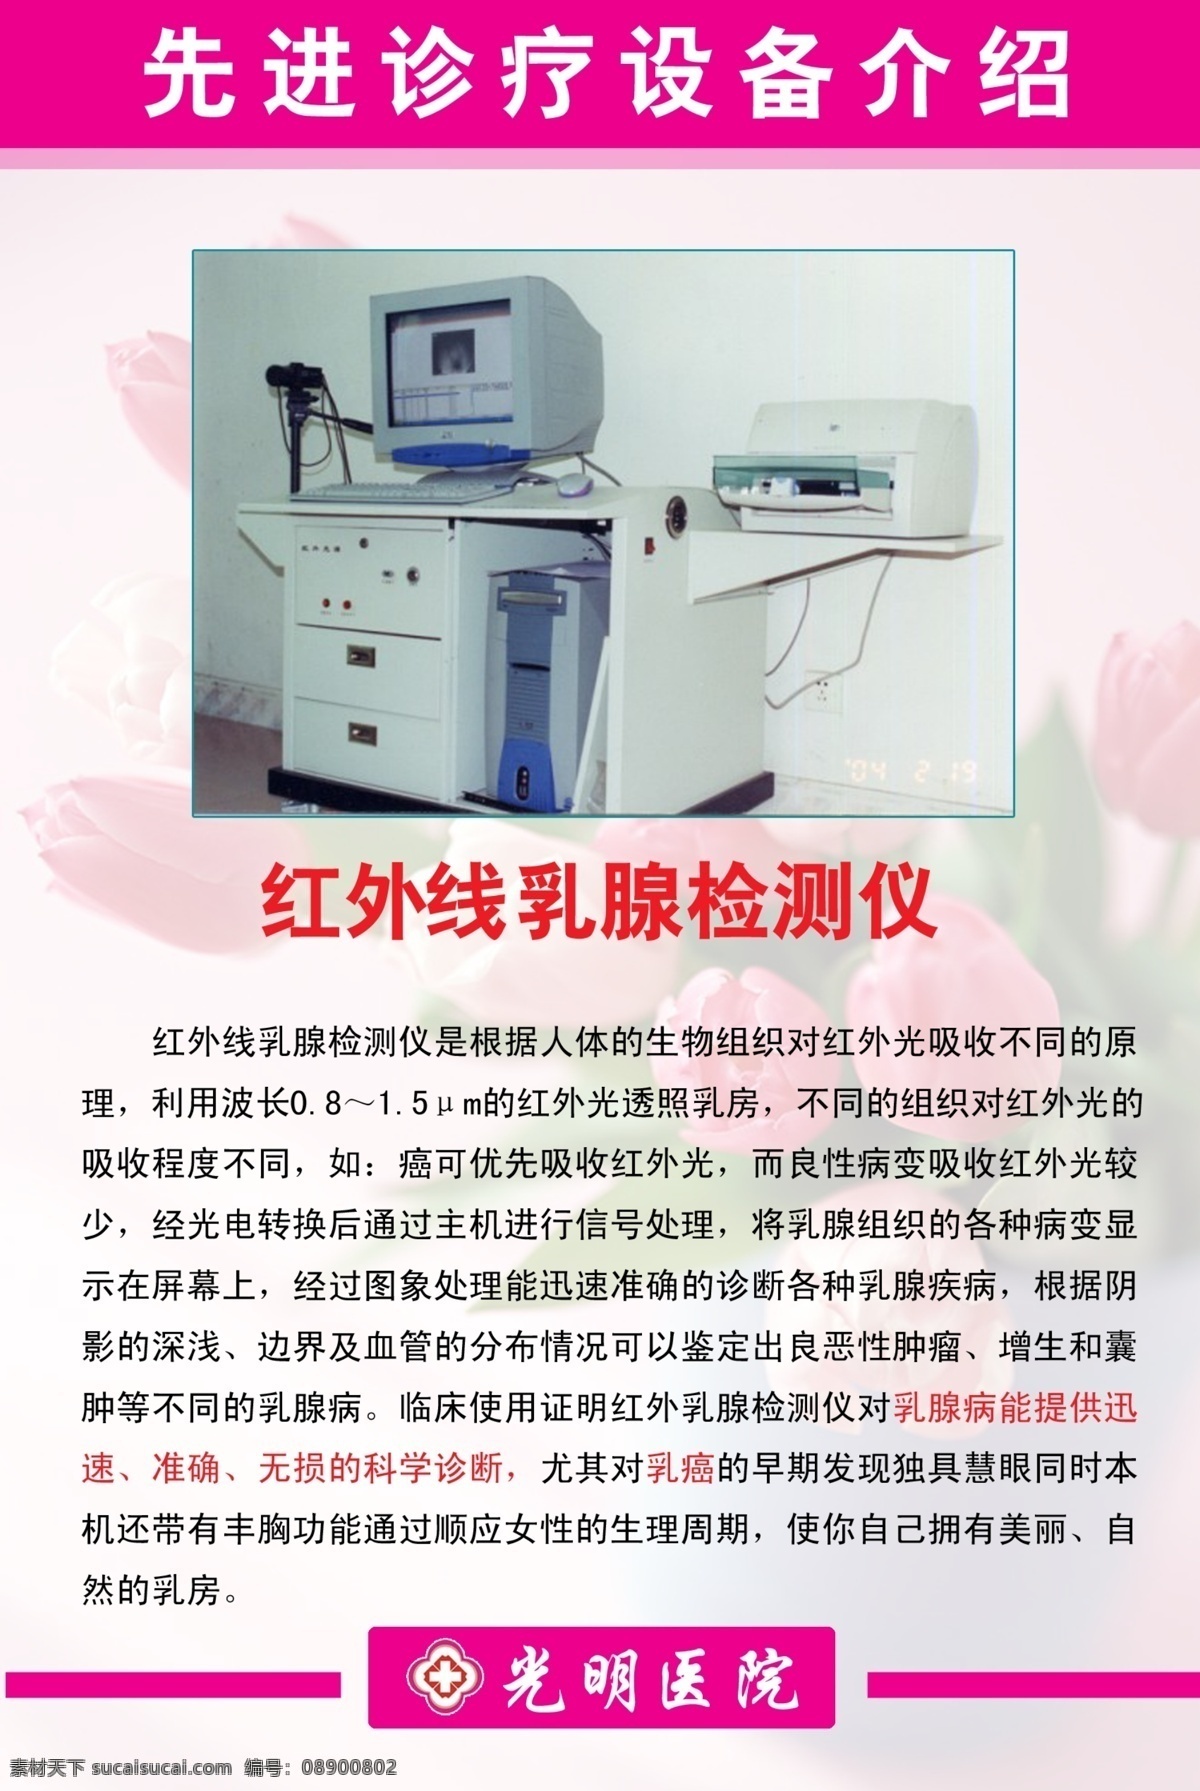 红外线 乳腺 检测仪 宣传 机器 设备 设备简介 医院 医疗 dm宣传单 广告设计模板 源文件